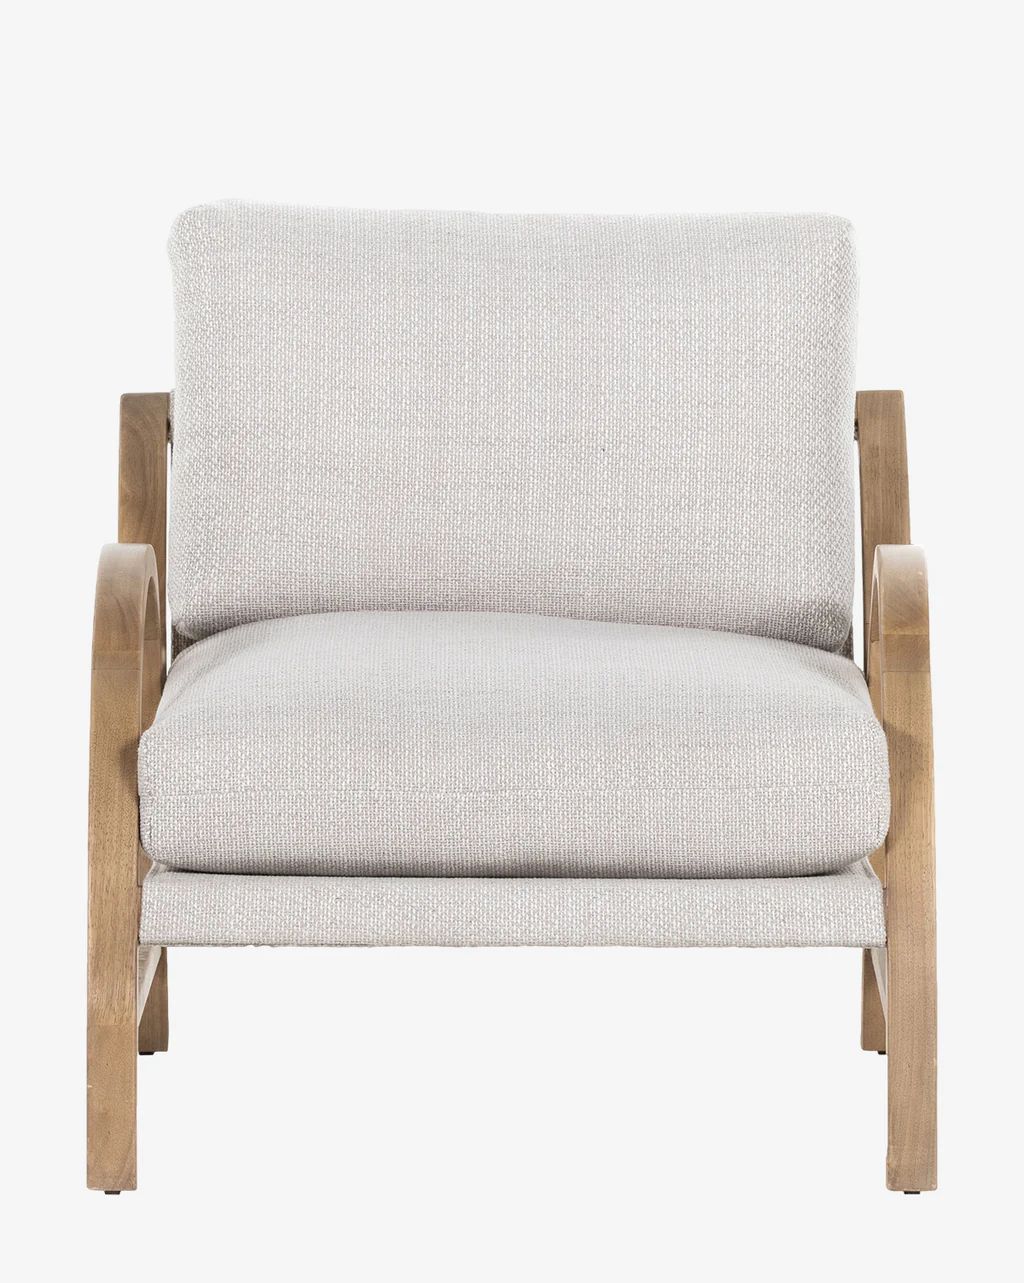 Estrada Chair | McGee & Co.